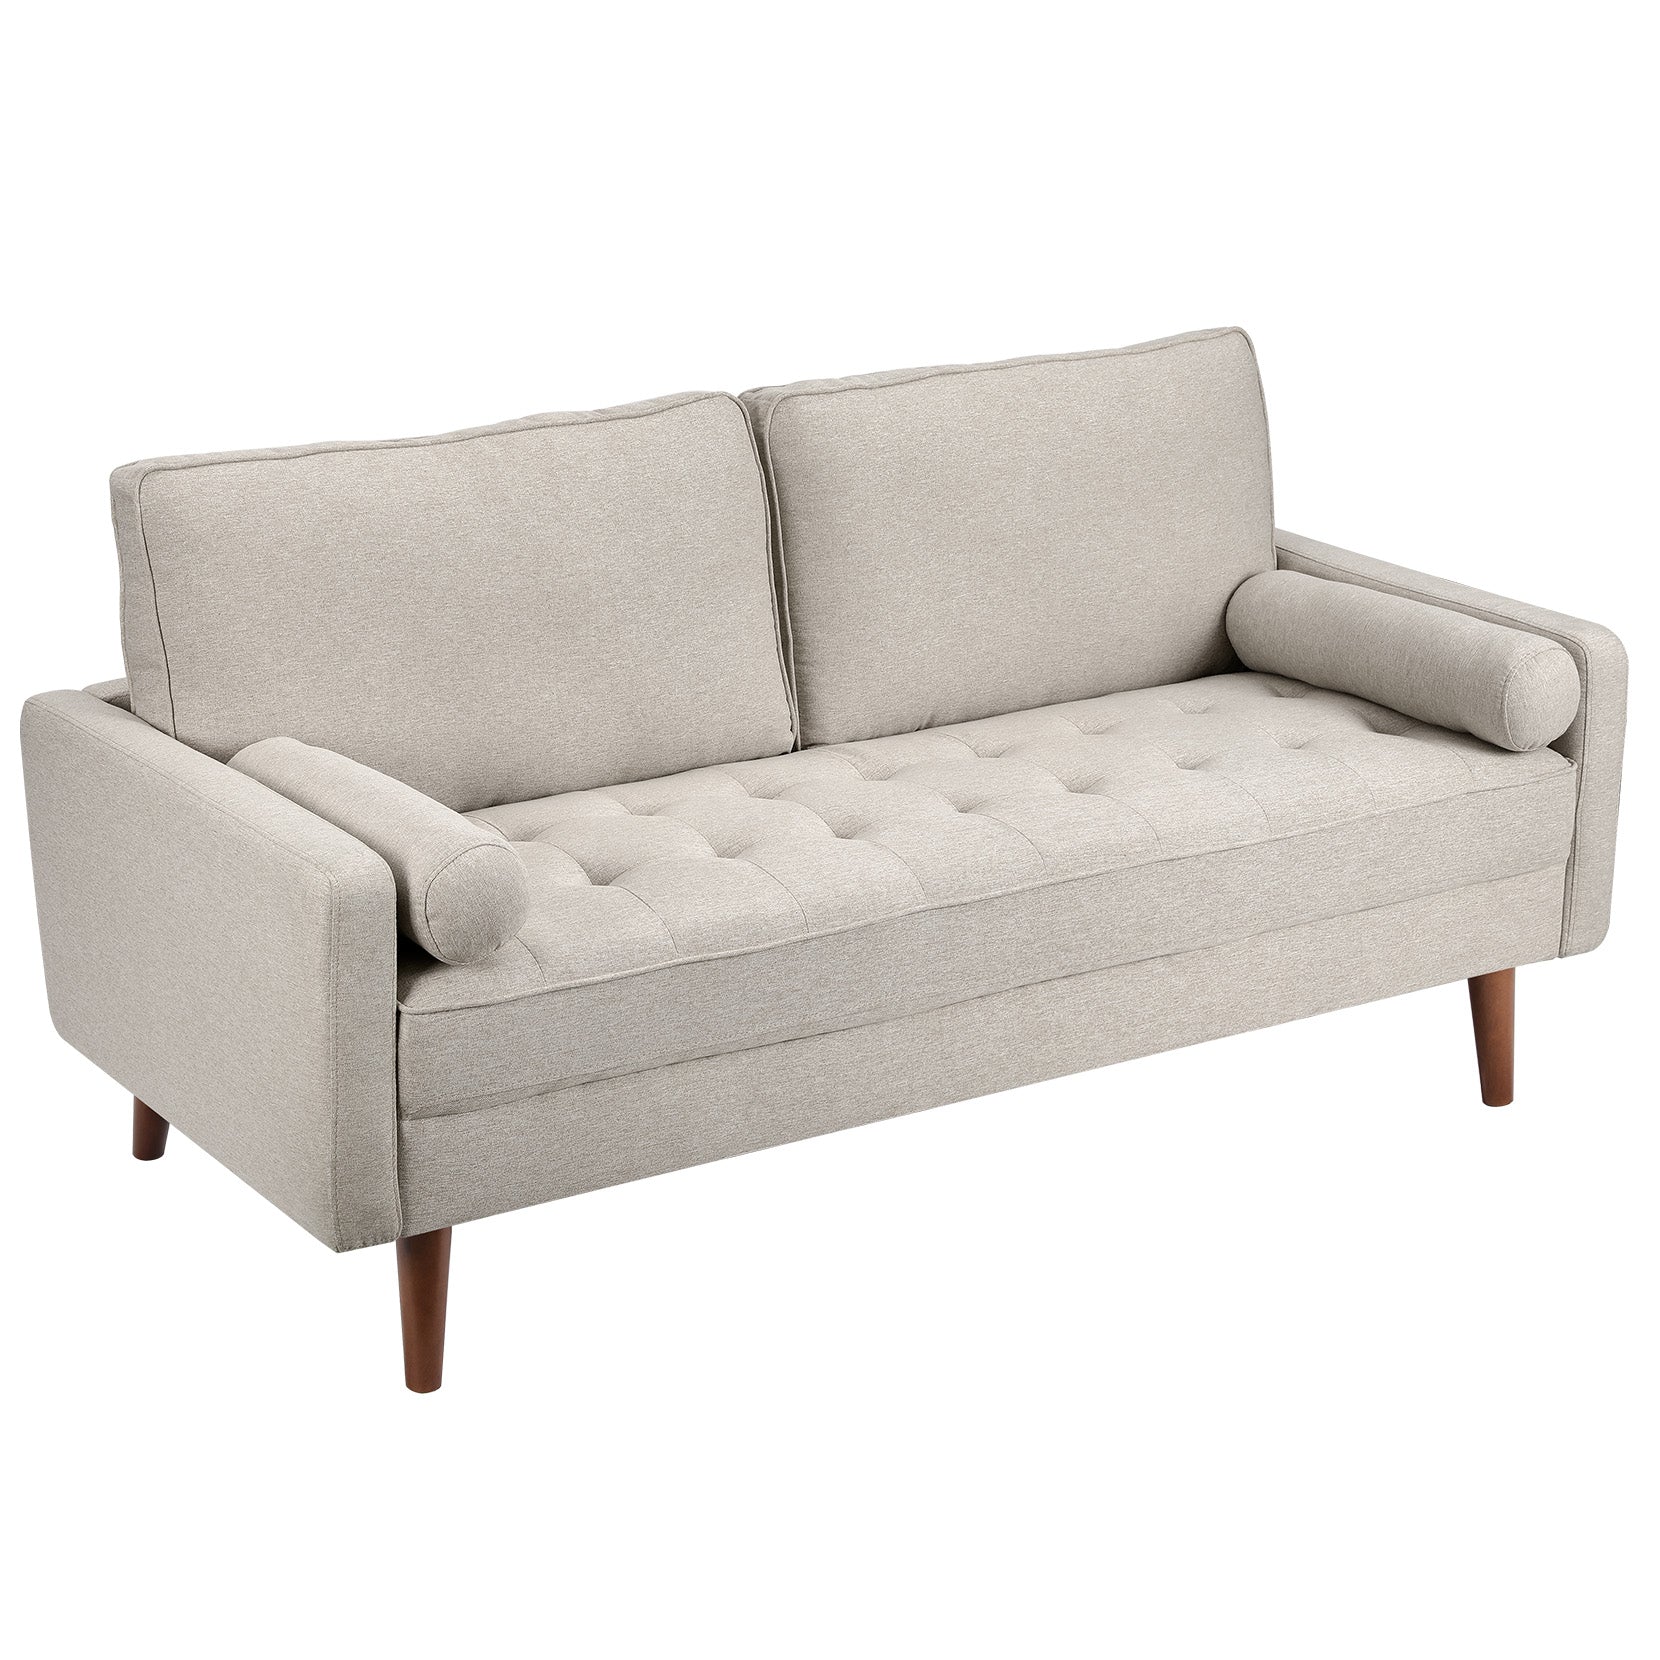 Koorlian Small Sofa Couch, 2 Seater Fabric Loveseat, Mid Century